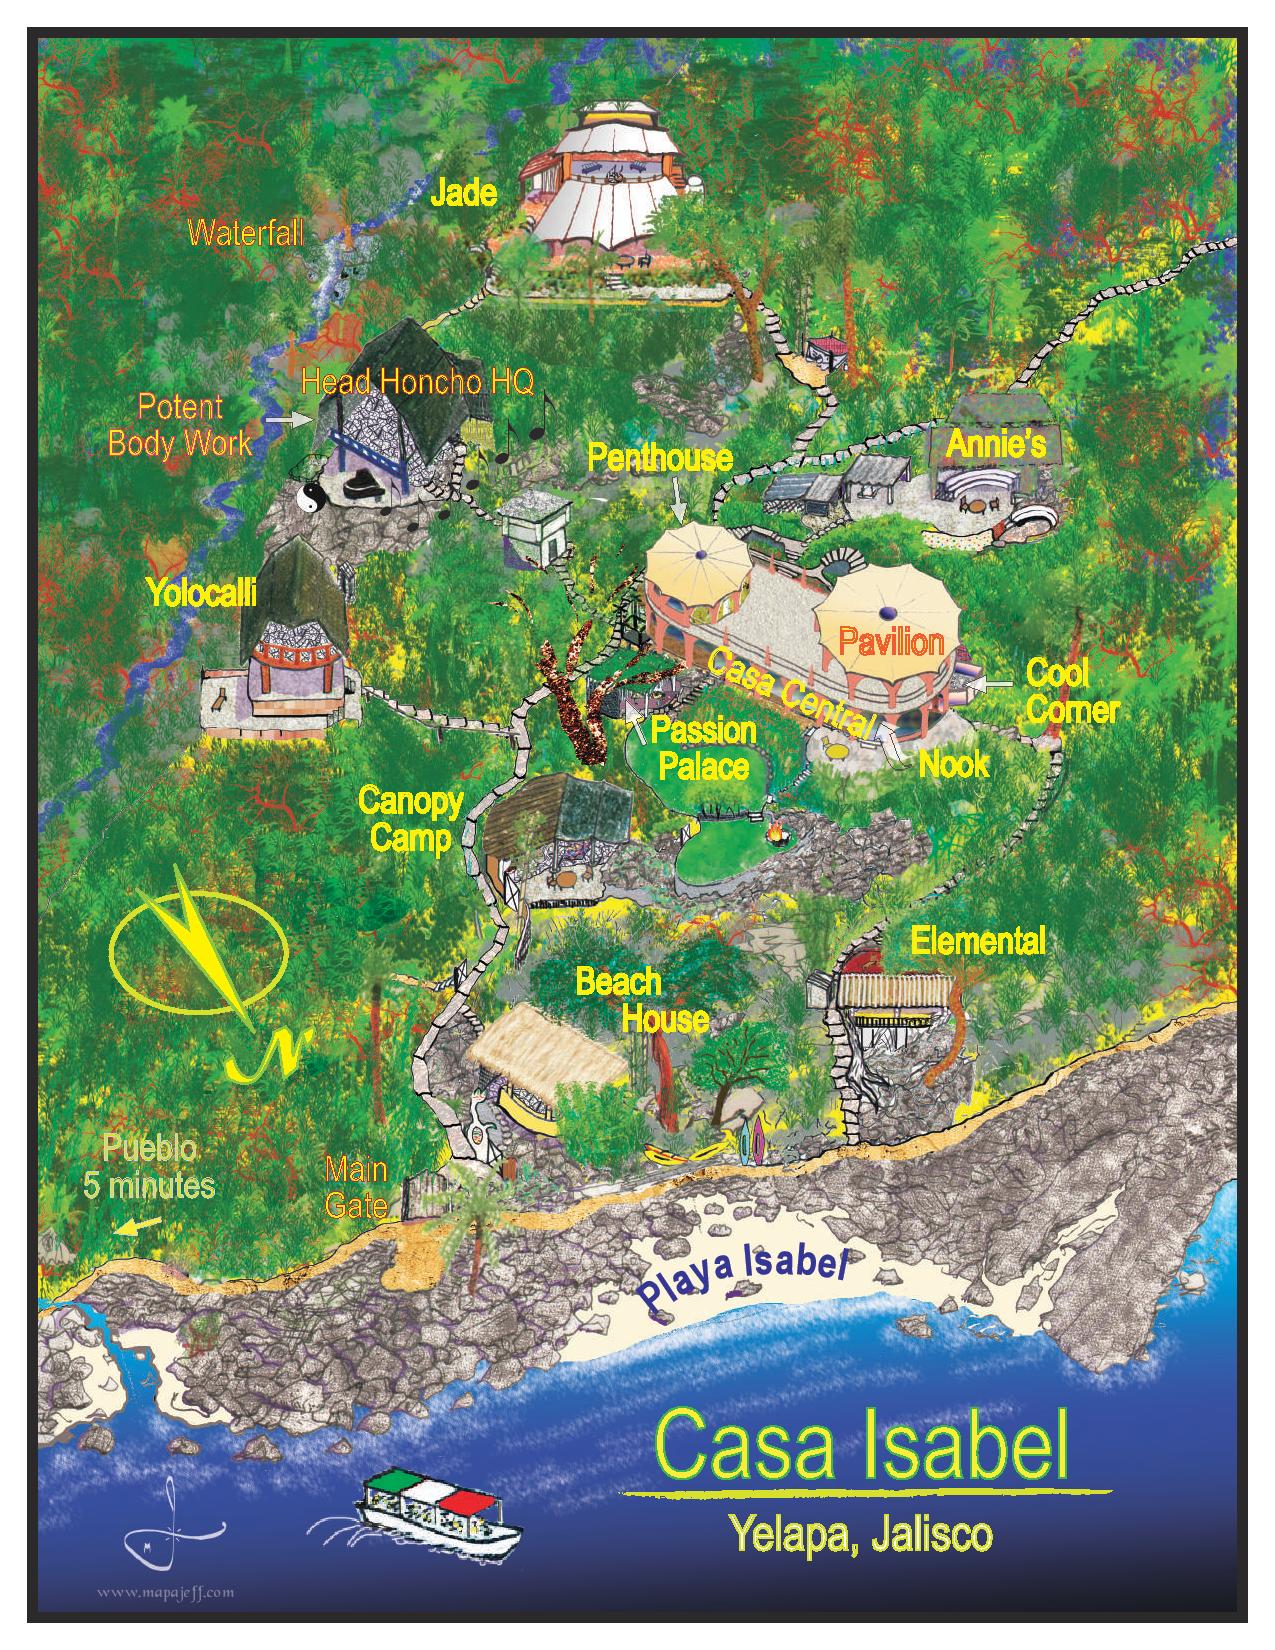 casaisabel_map